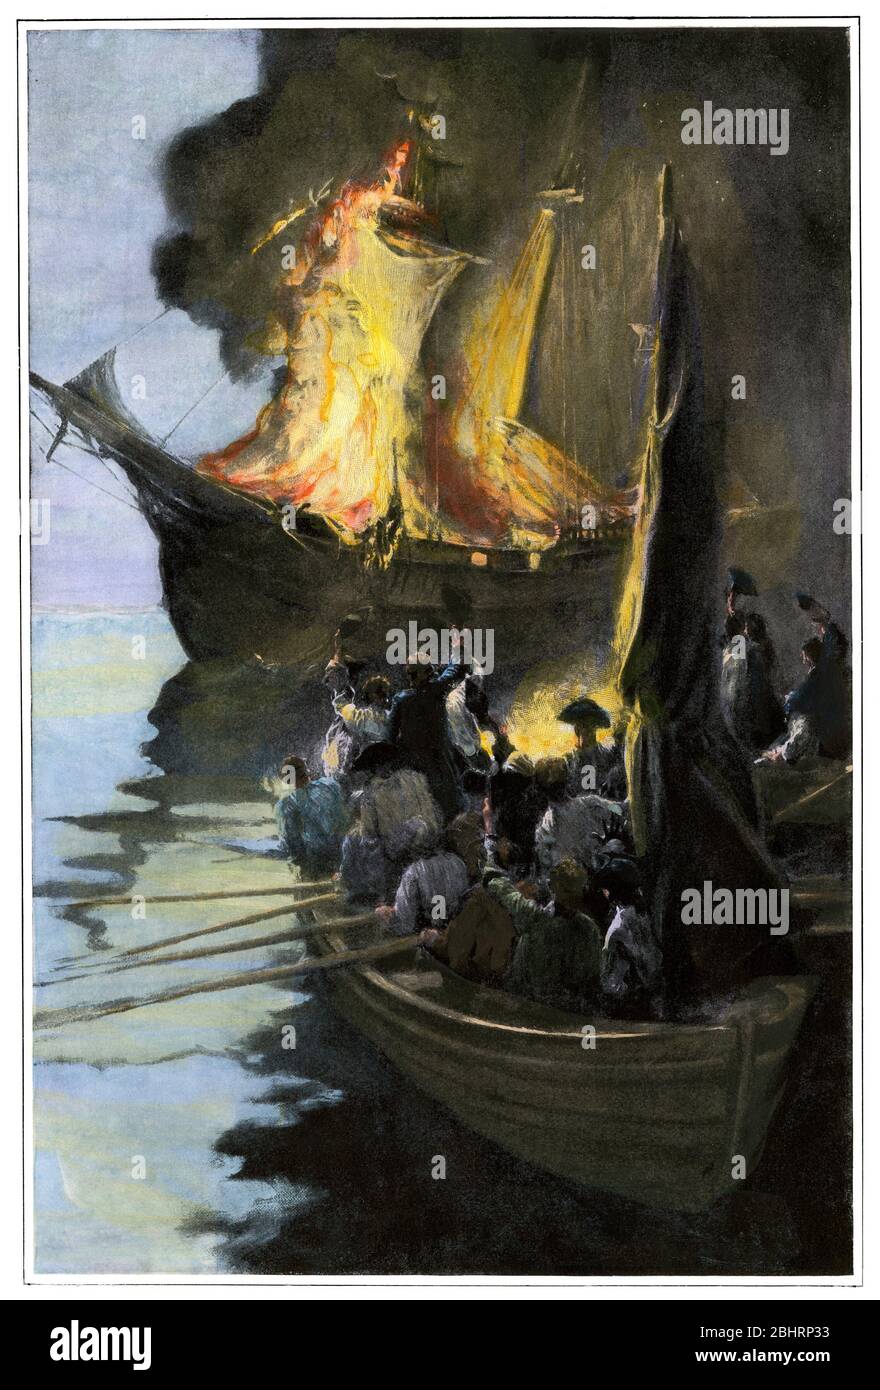 Les patriotes du Rhode Island brûlent le HMS Gaspee. Demi-teinte de couleur manuelle d'une illustration Banque D'Images